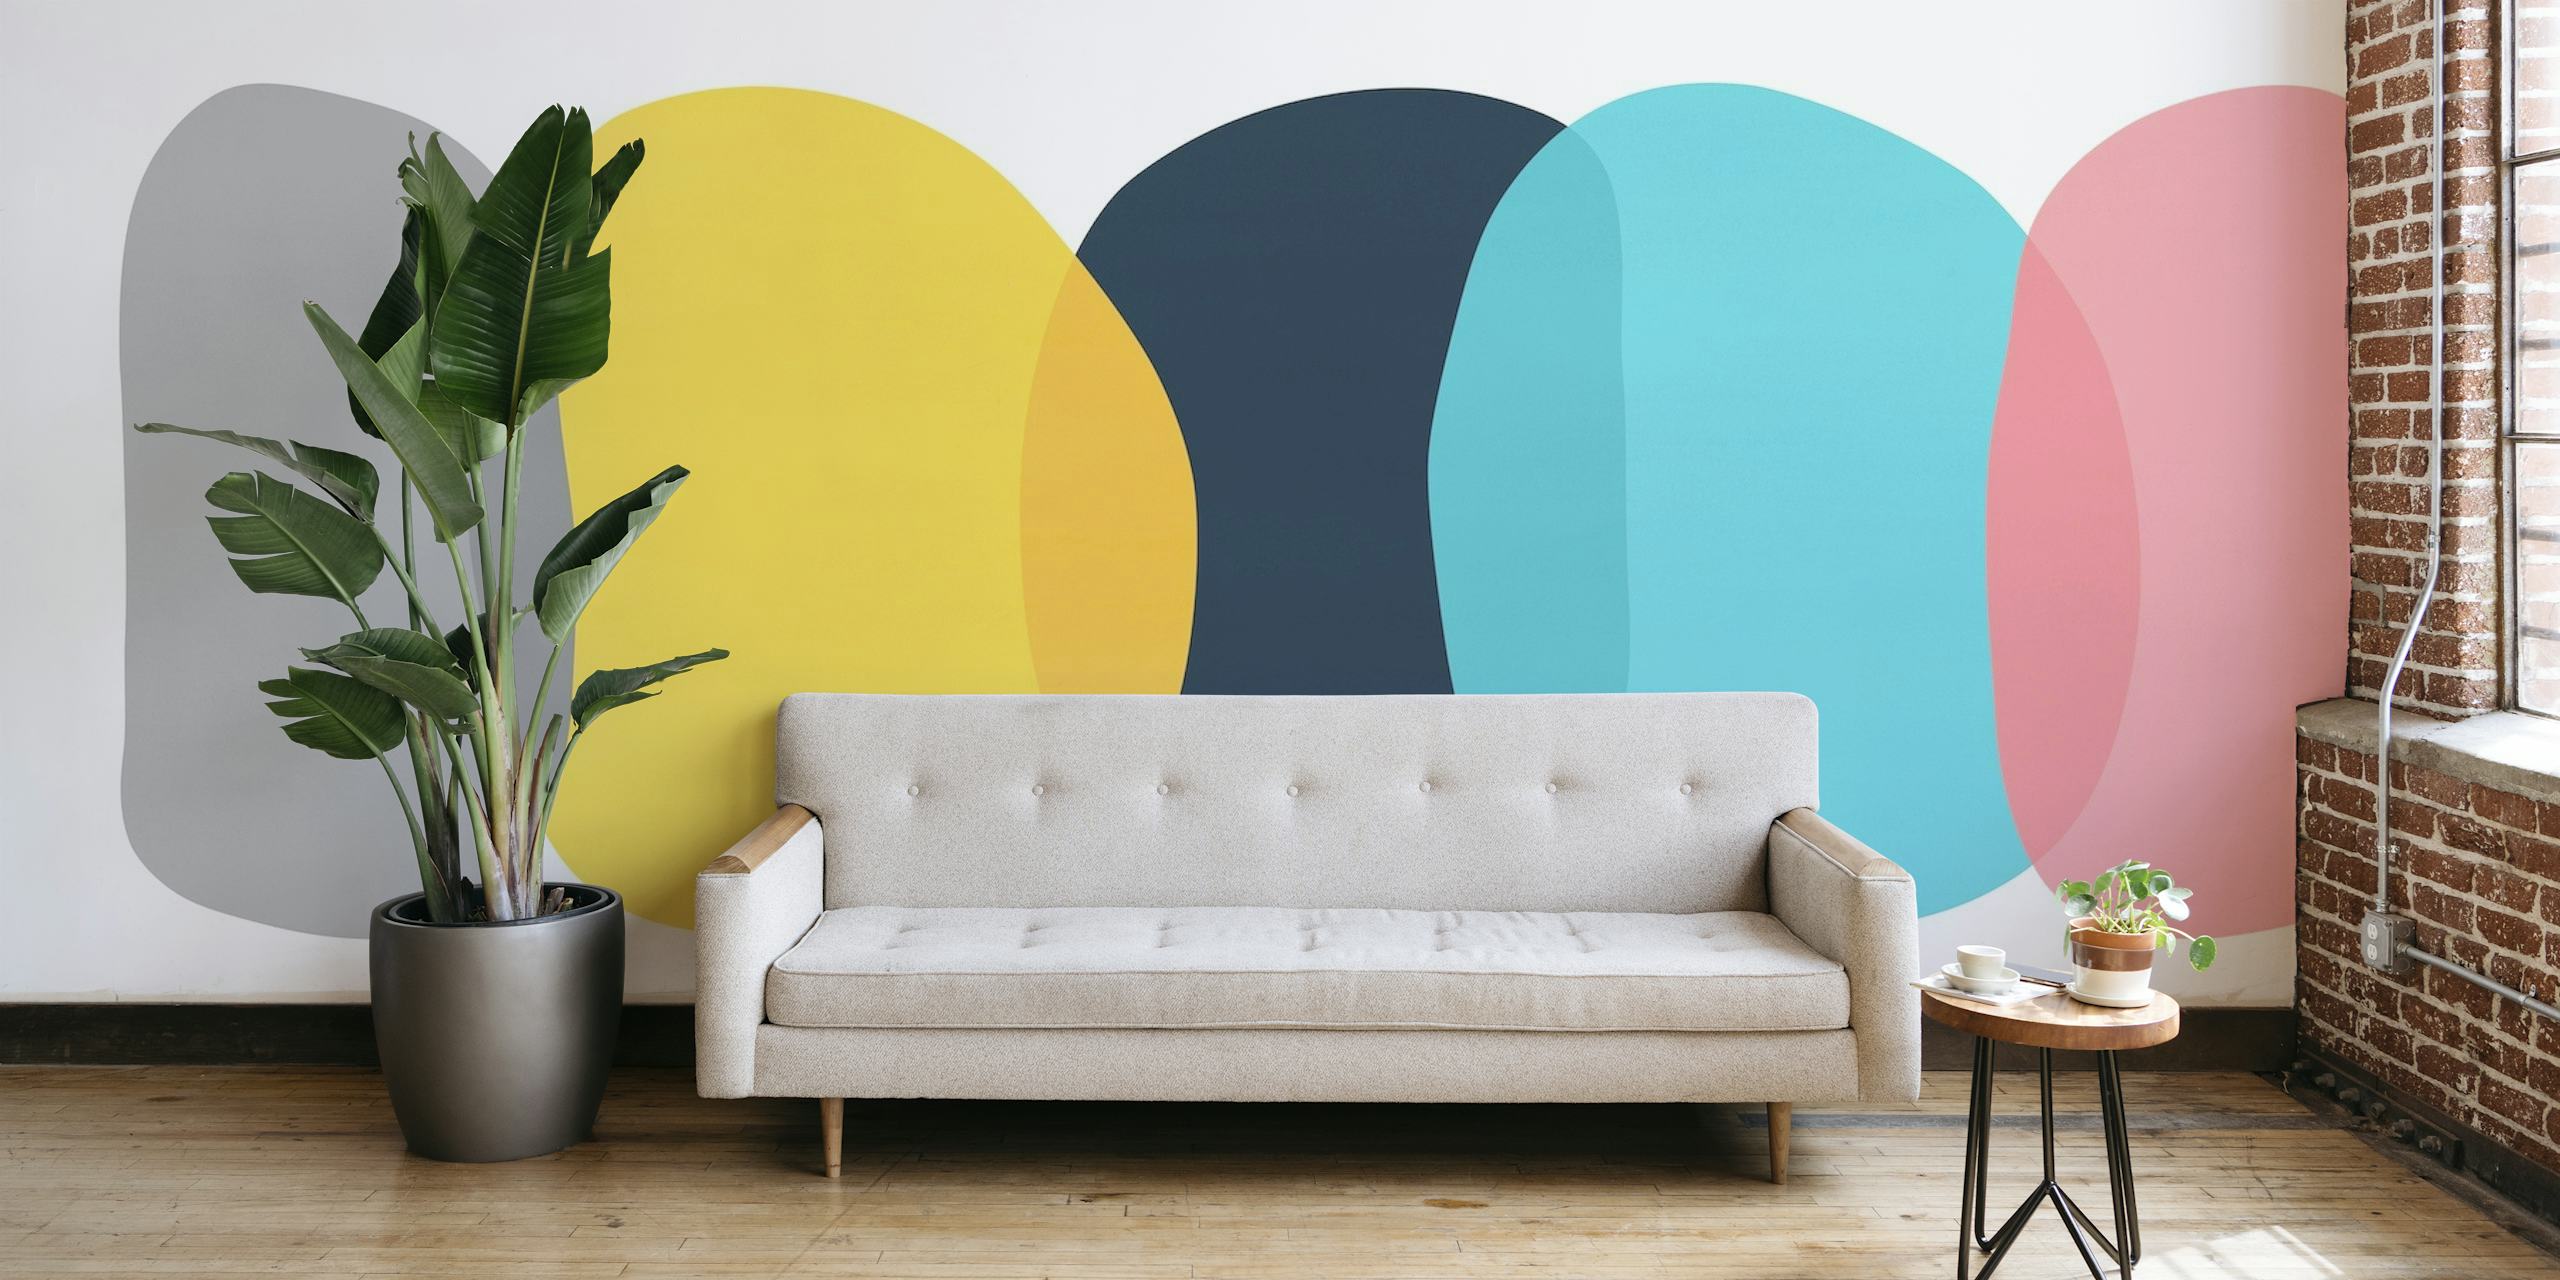 Papier peint mural de formes abstraites avec des couleurs douces et un design géométrique